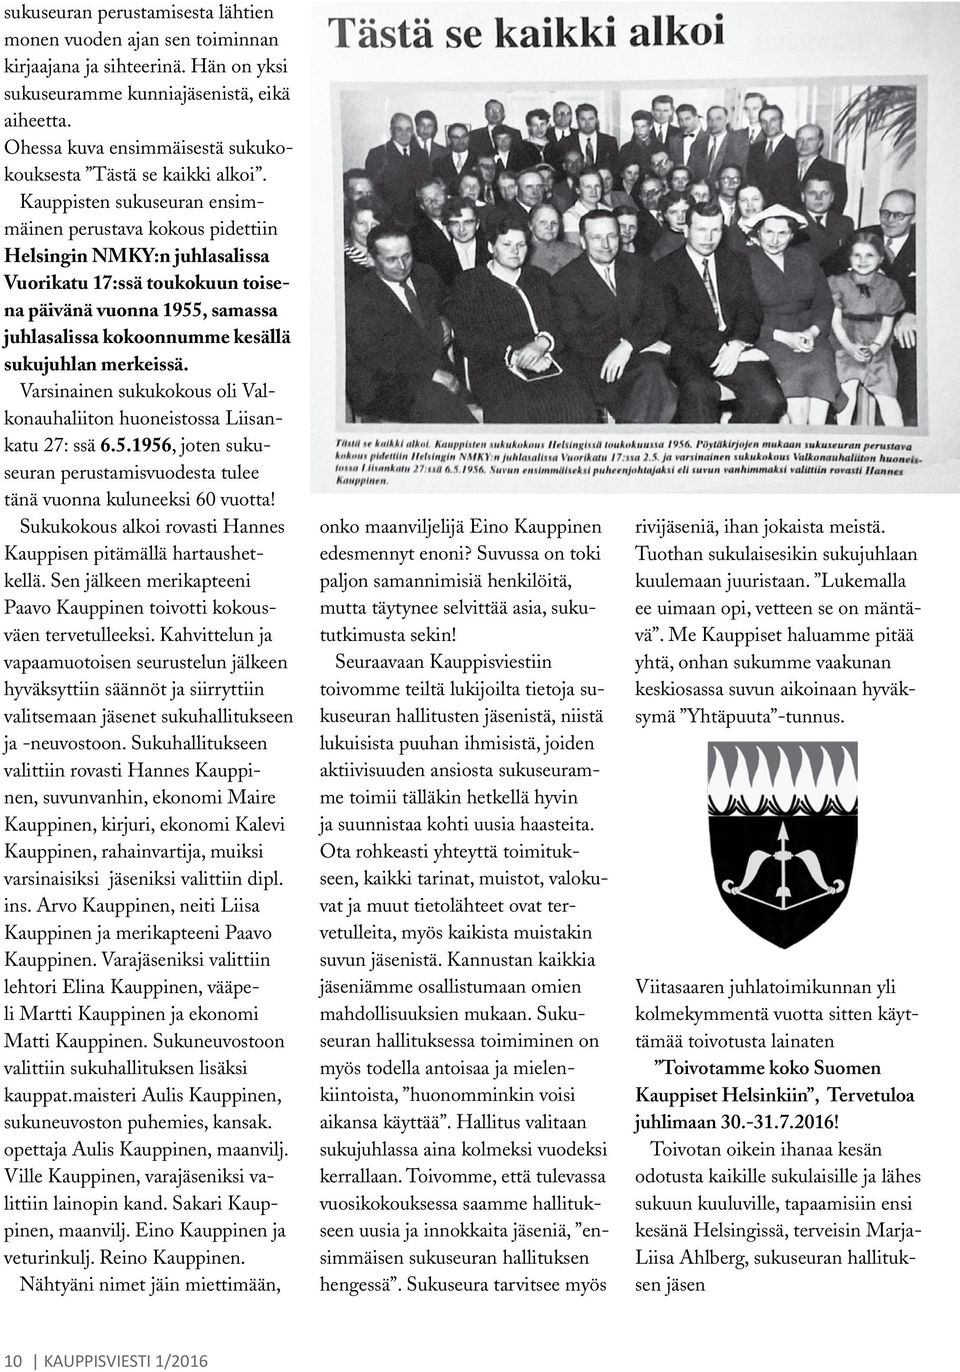 Kauppisten sukuseuran ensimmäinen perustava kokous pidettiin Helsingin NMKY:n juhlasalissa Vuorikatu 17:ssä toukokuun toisena päivänä vuonna 1955, samassa juhlasalissa kokoonnumme kesällä sukujuhlan